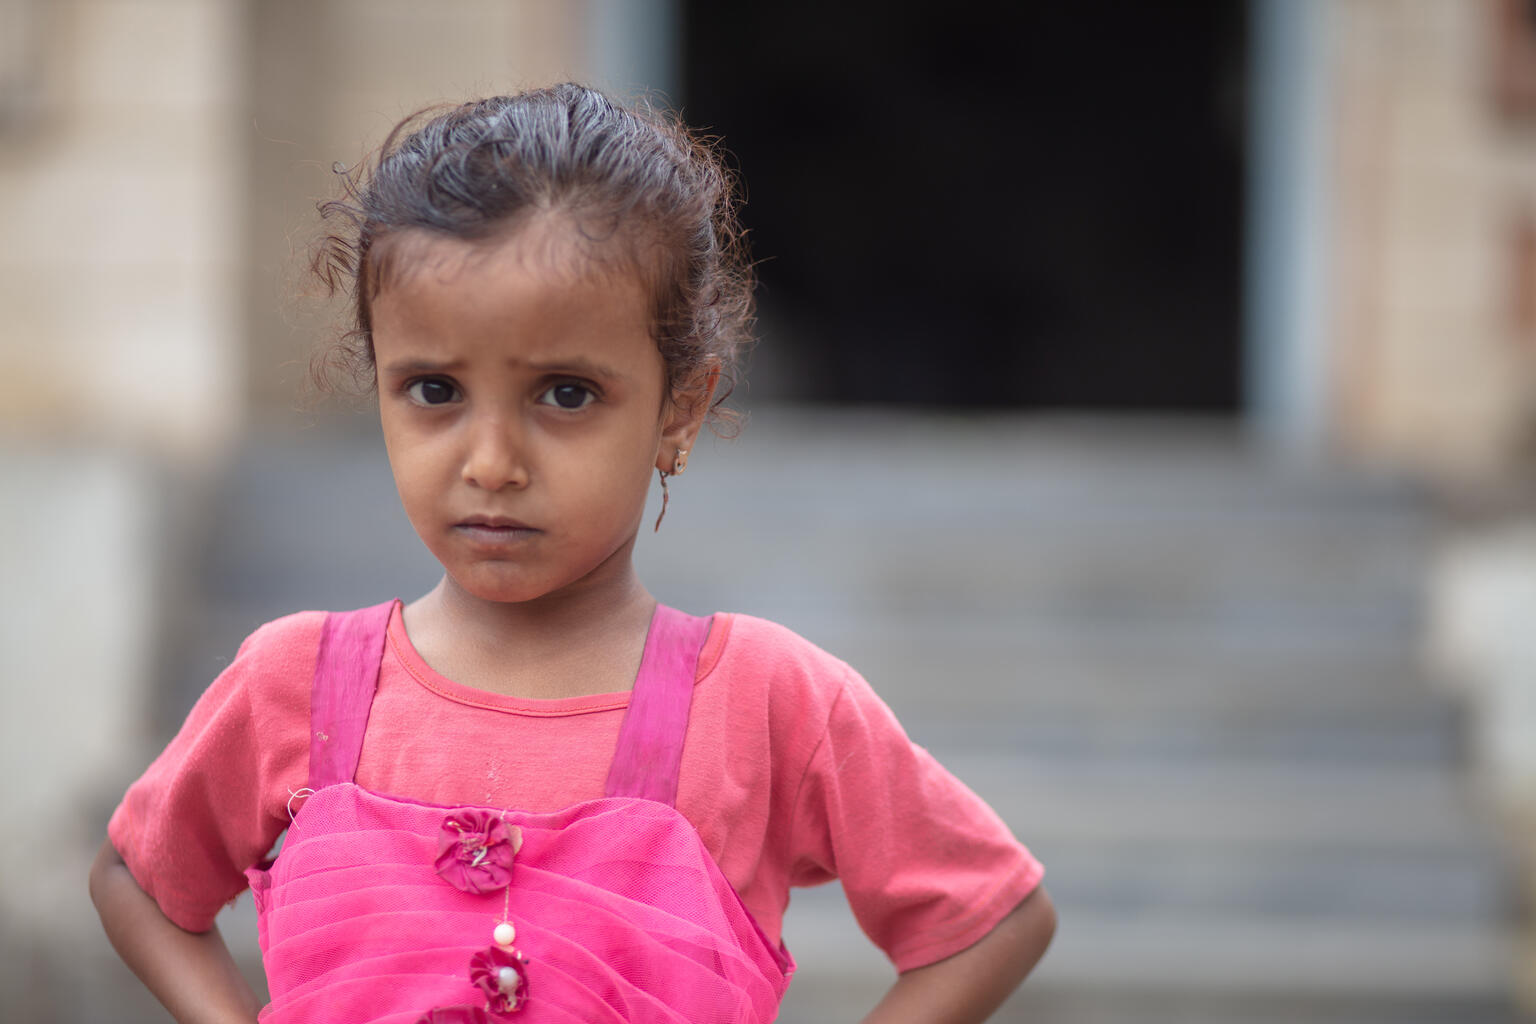 イエメンのハッジャ州にあるユニセフが支援する栄養治療センターで、栄養不良の治療を受けている4歳のロワイダちゃん。紛争の影響でイエメンの子どもの栄養状態は悪化している。(イエメン、2021年7月撮影)